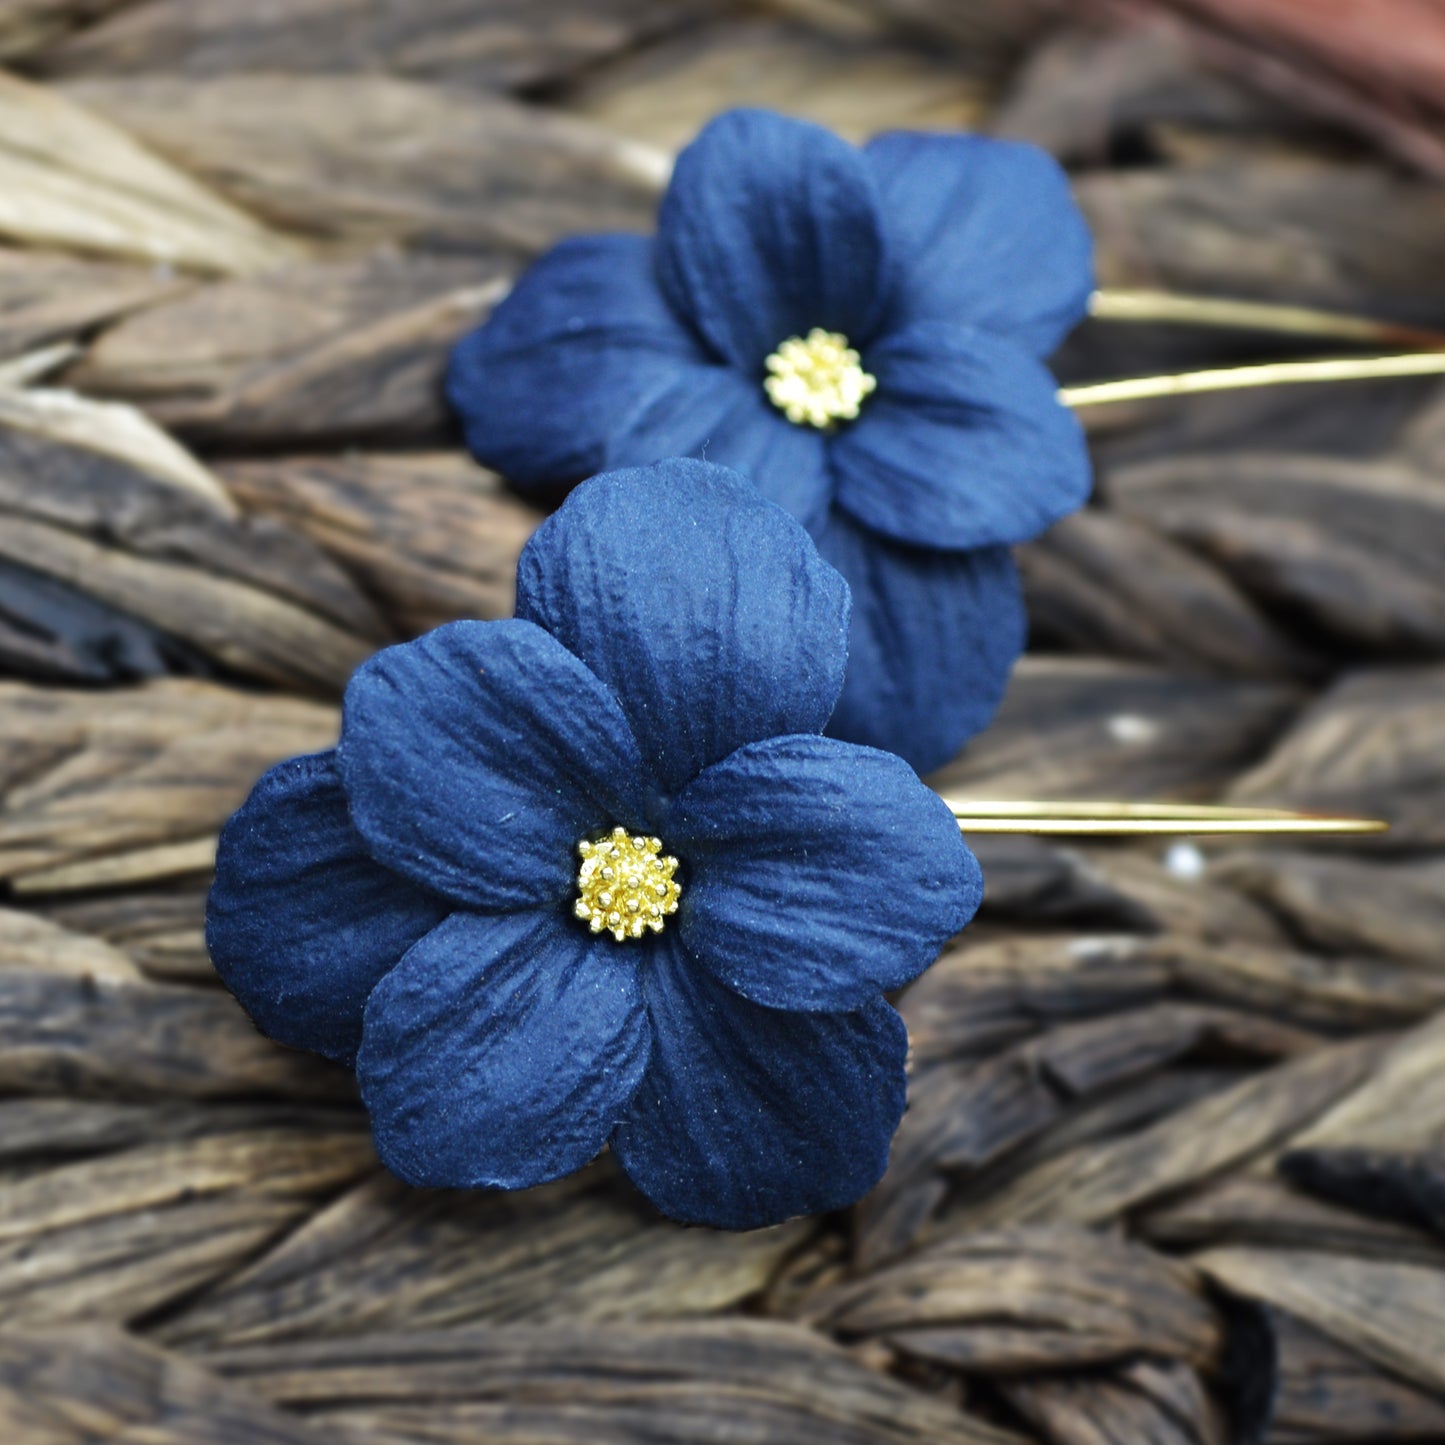 Large Navy Blue Flower Earring